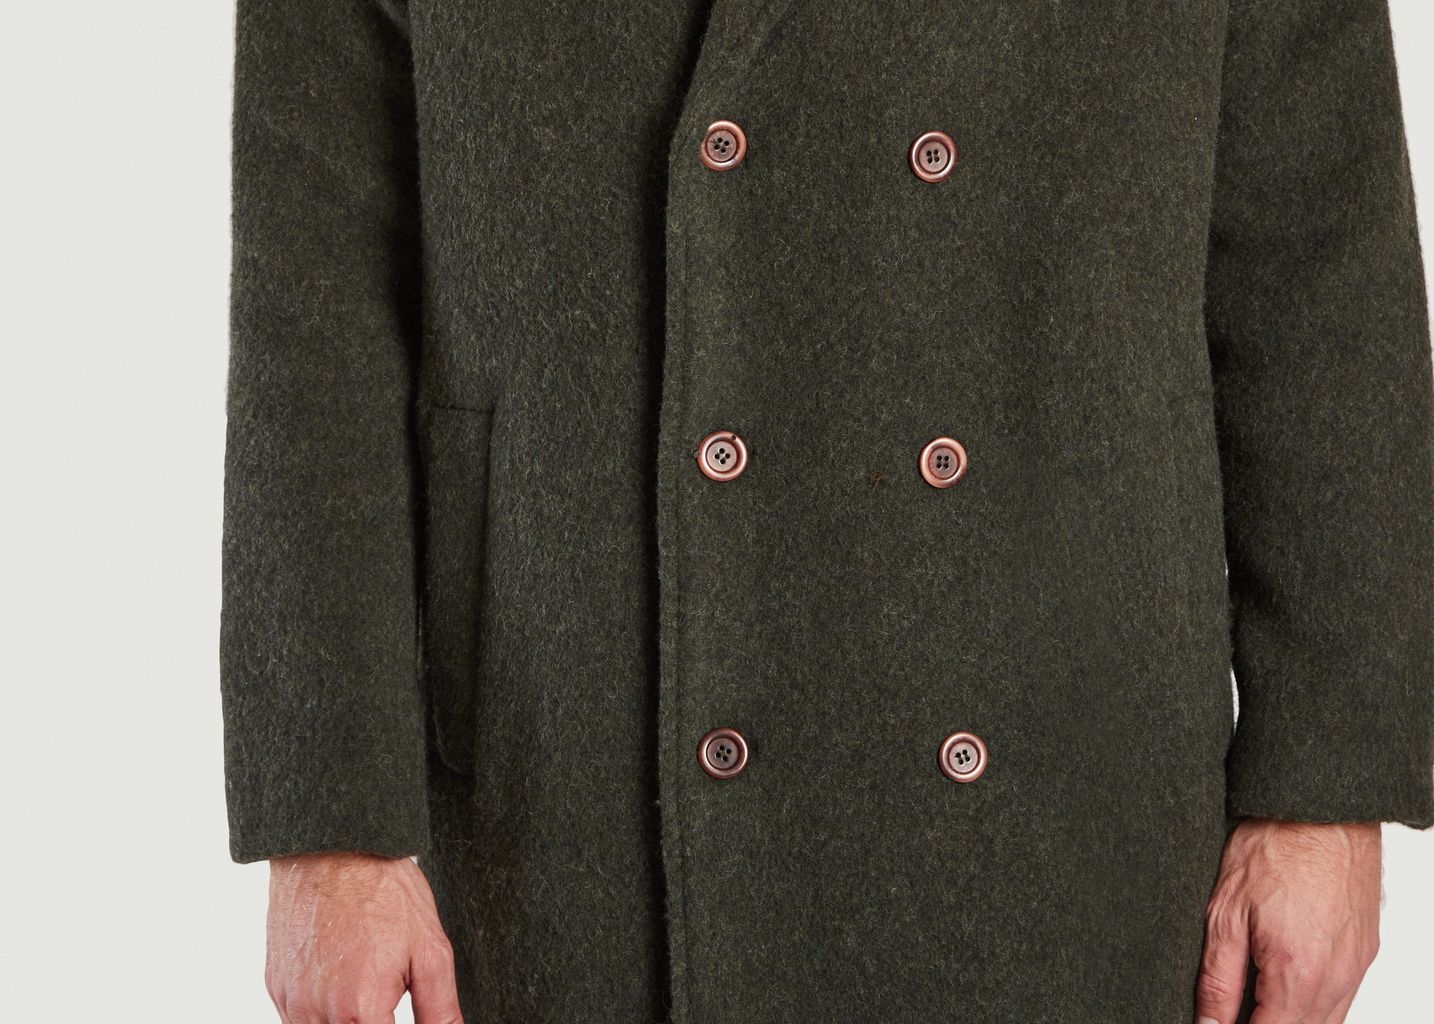 Zefir long coat in recycled wool - American Vintage